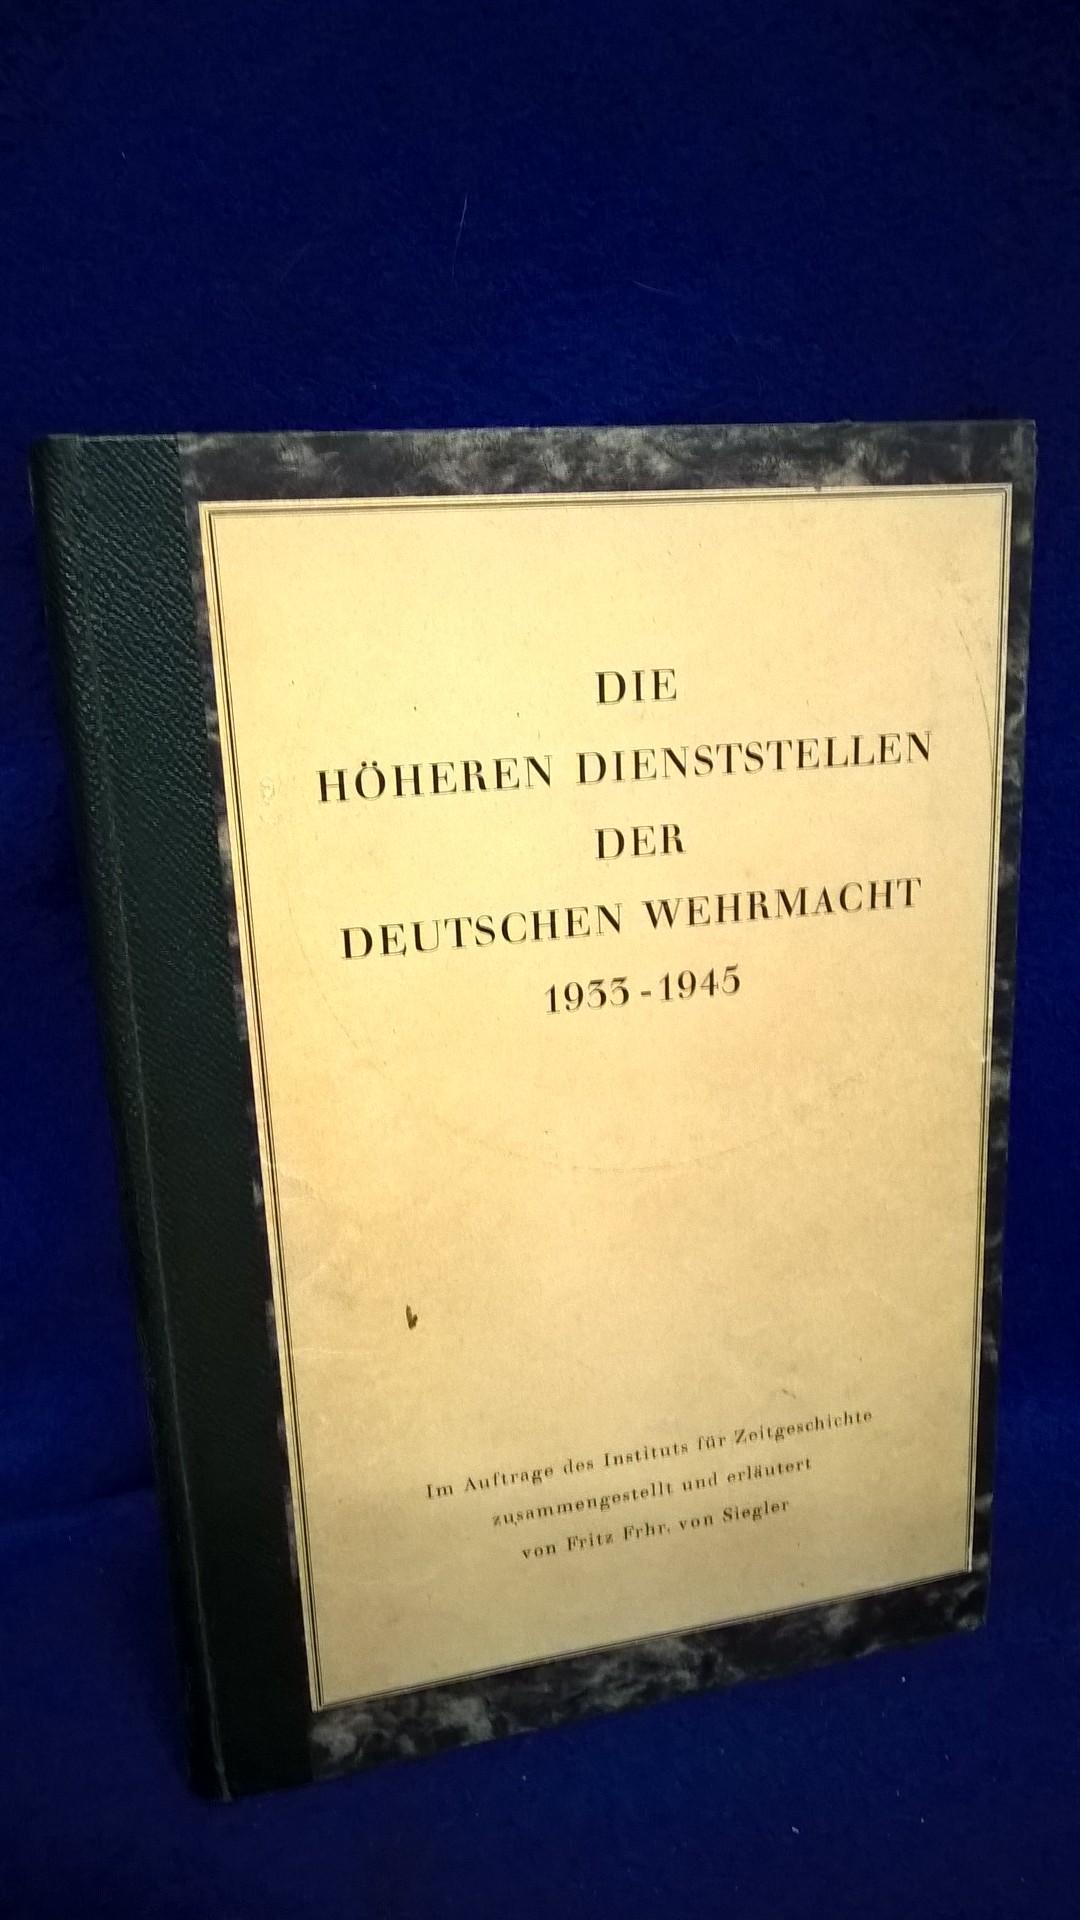 Die höheren Dienststellen der deutschen Wehrmacht 1933-1945.